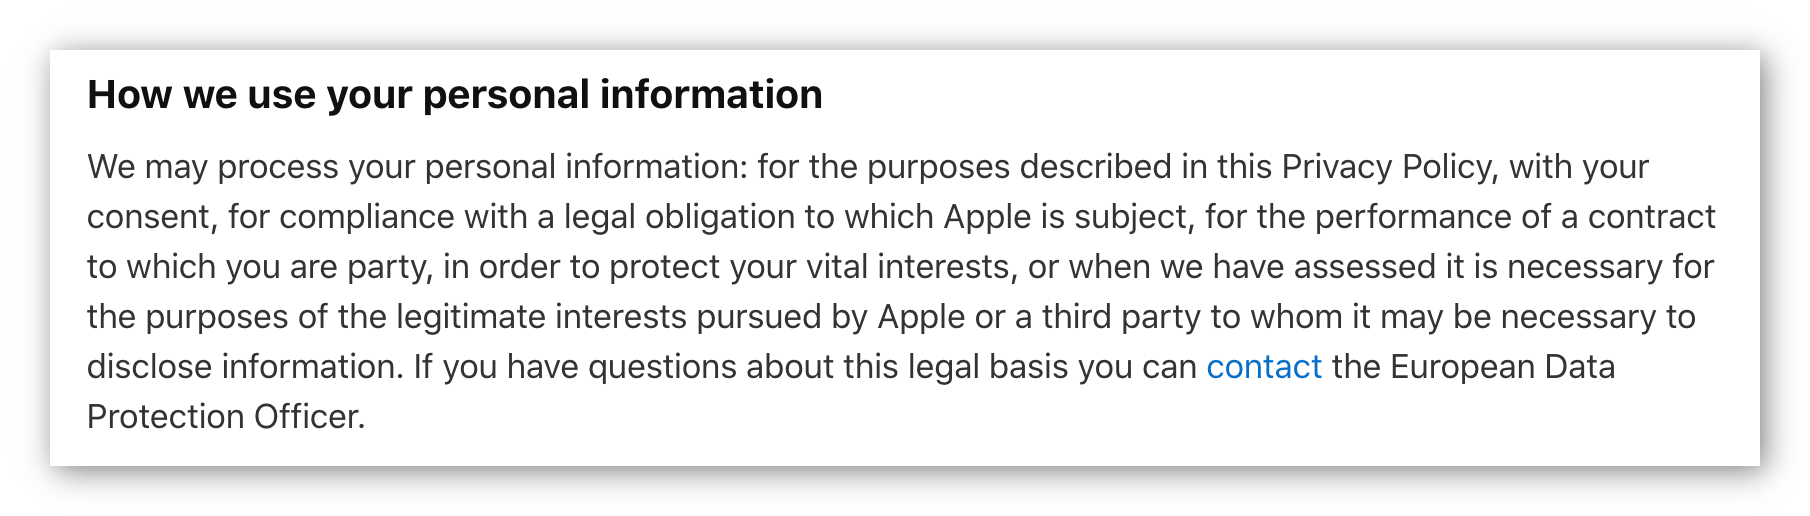 Captura de pantalla de la política de privacidad de Apple